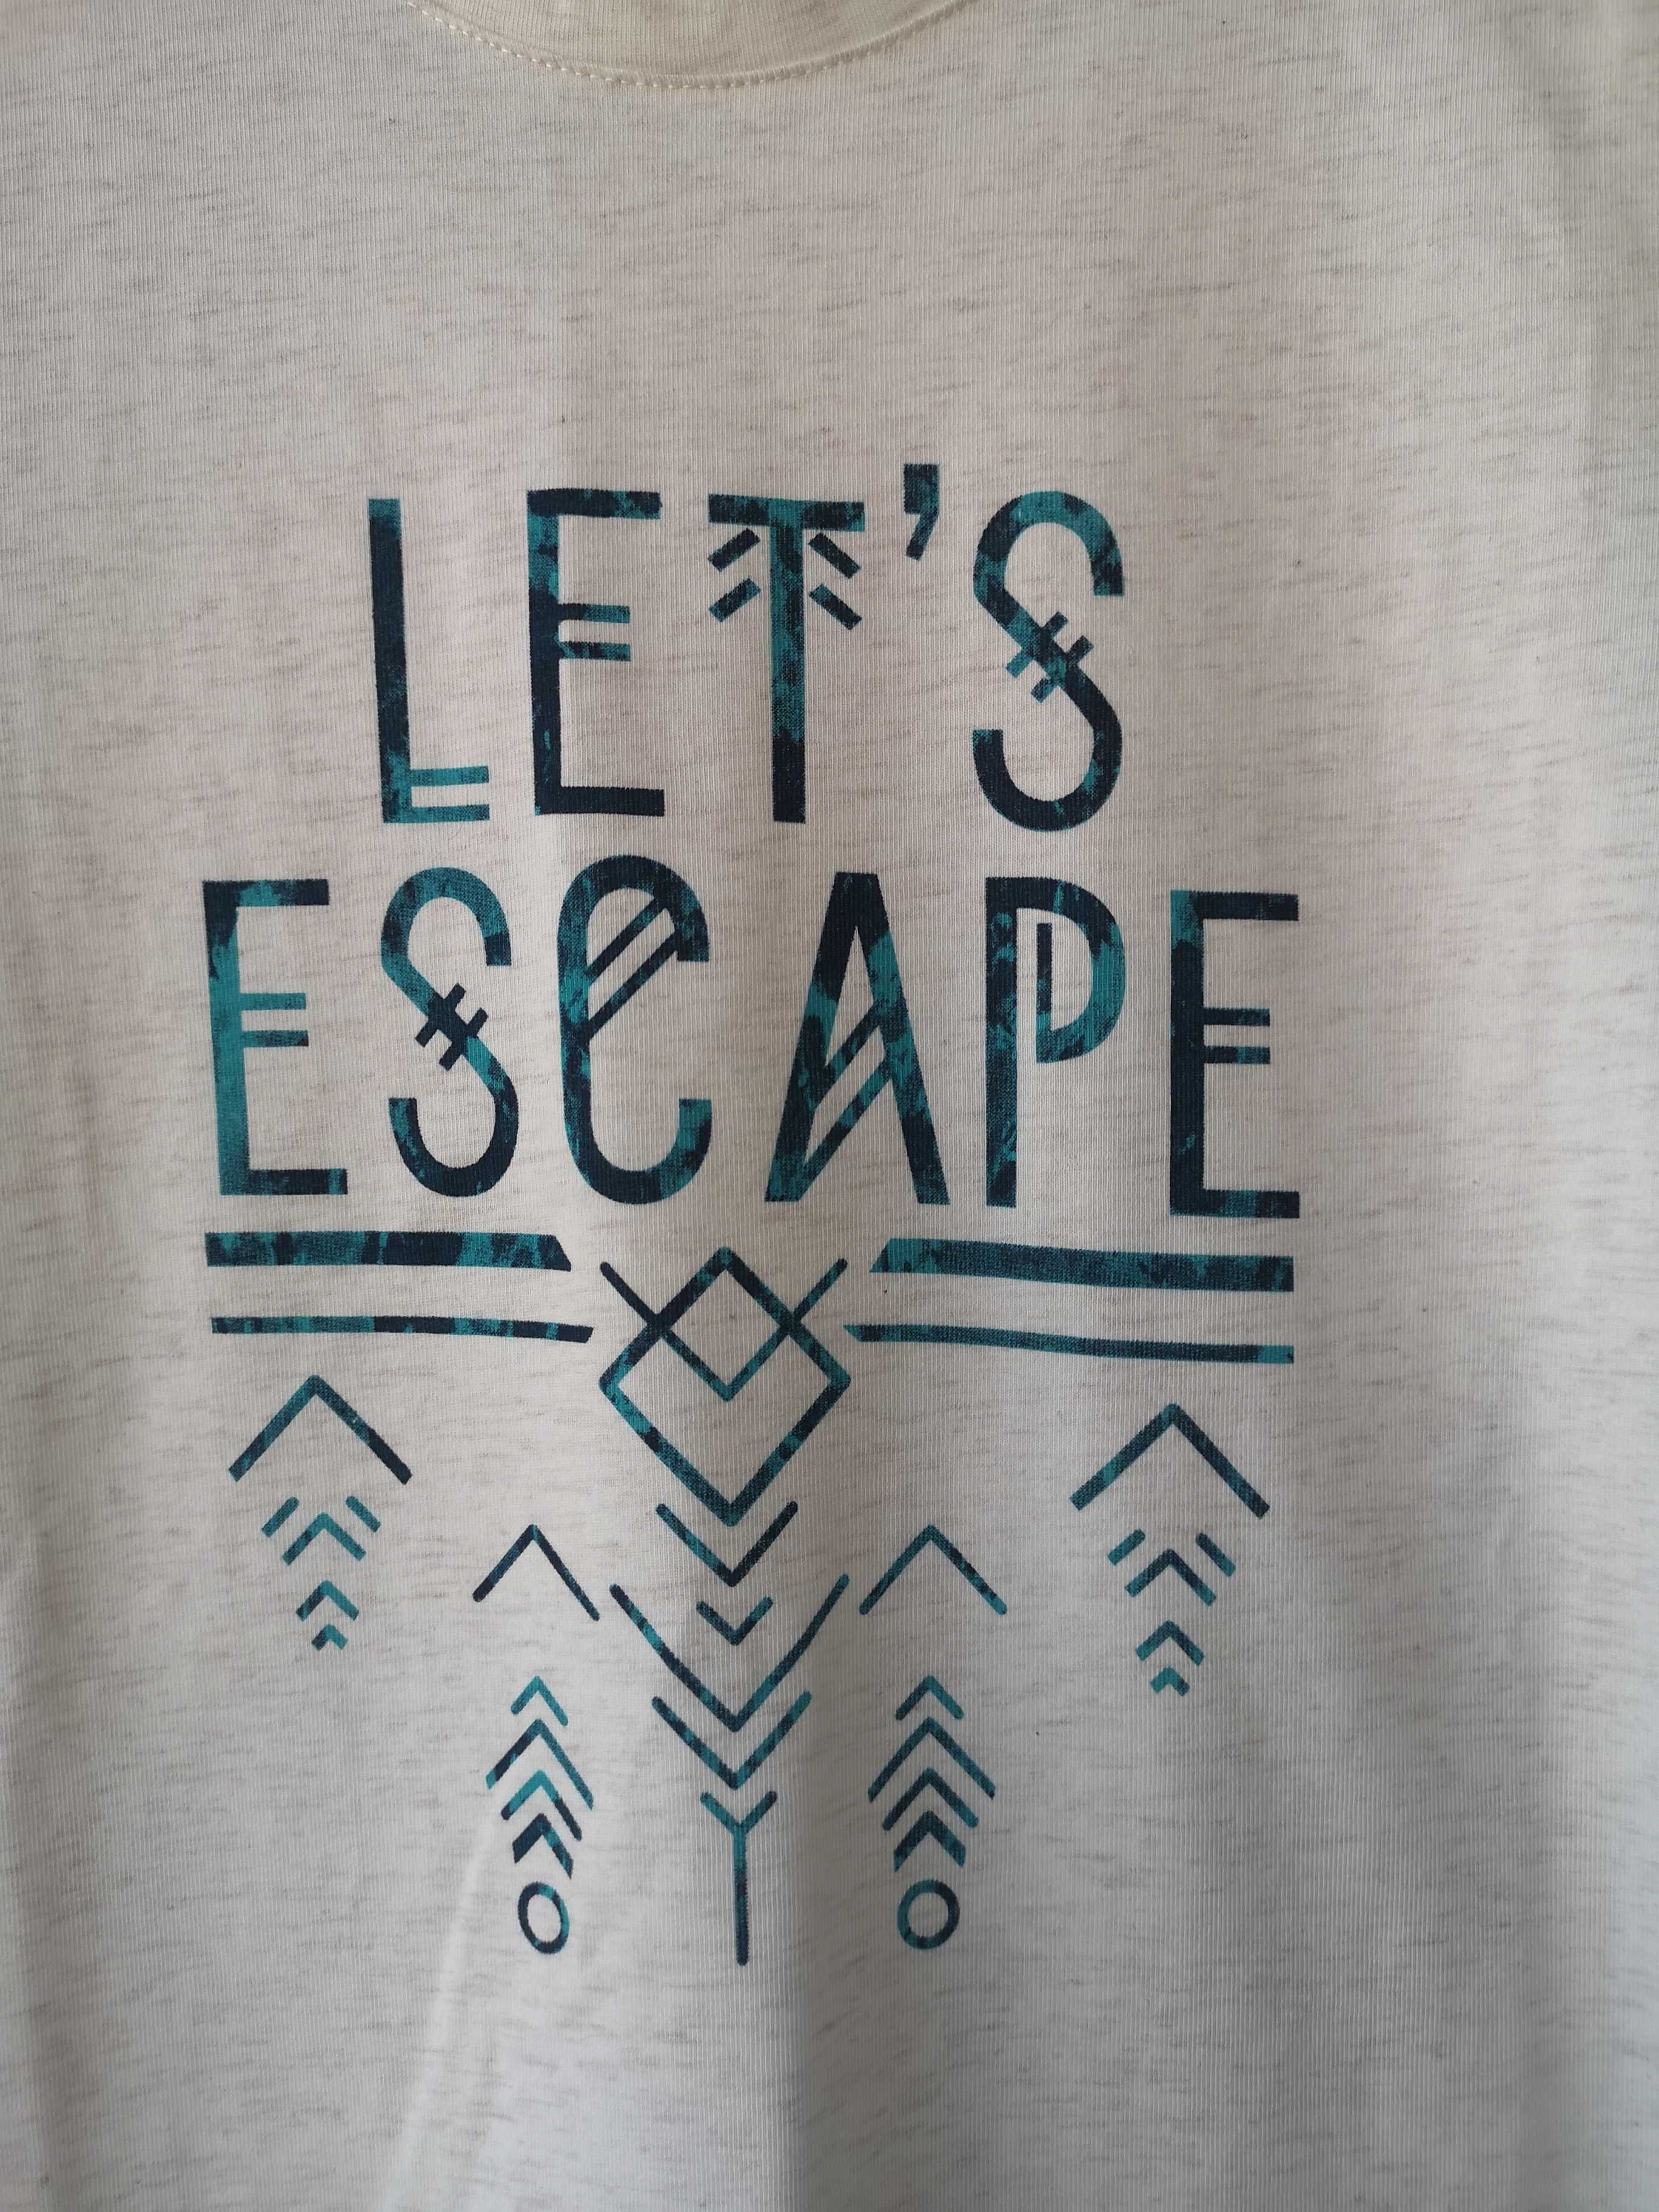 T-shirt "Let's Escape" Quechua M